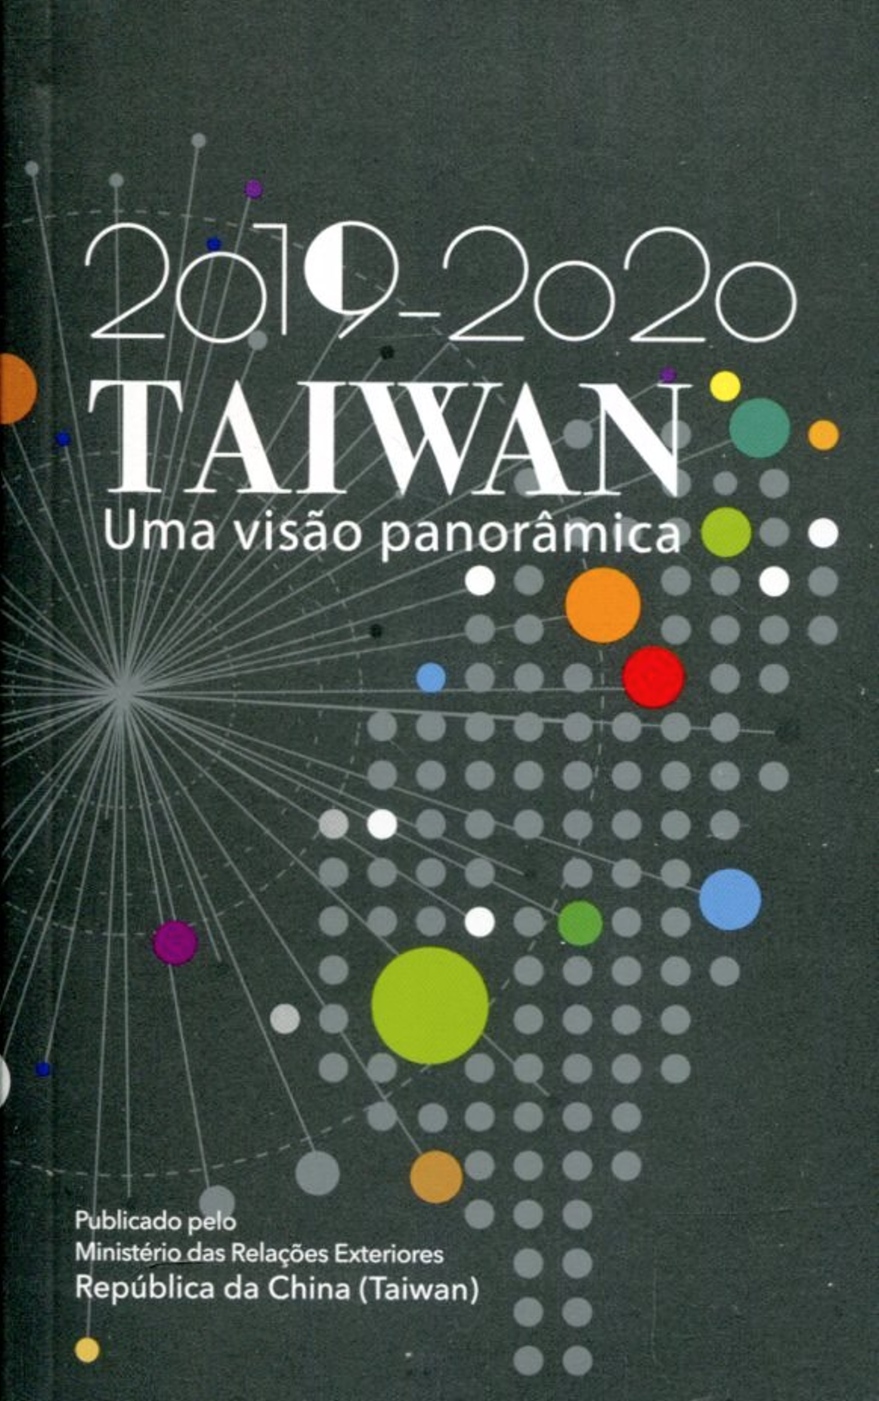 2019-2020台灣一瞥 葡萄牙文